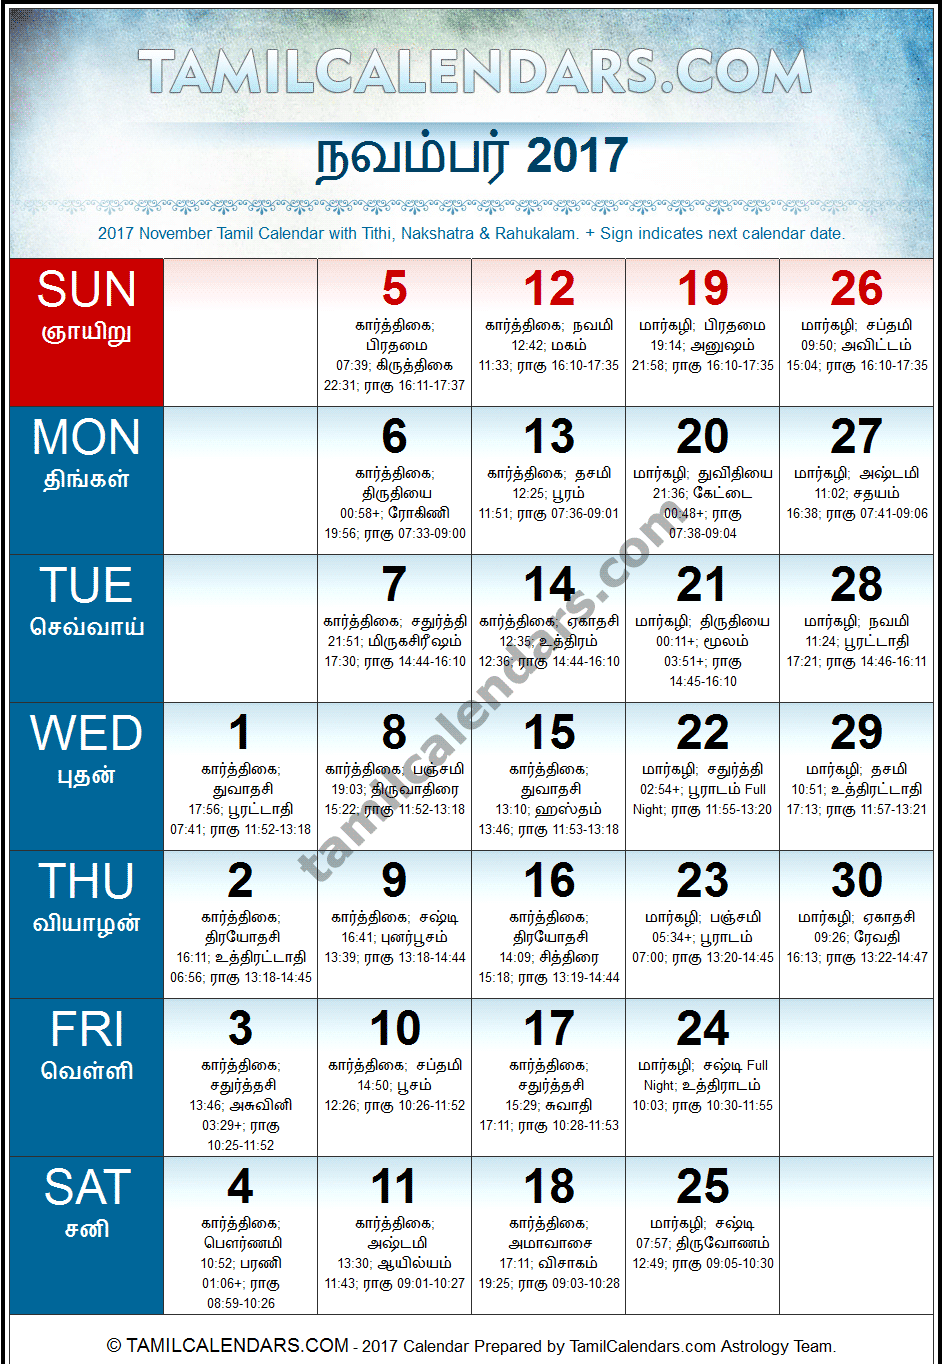 November 2017 Tamil Calendar